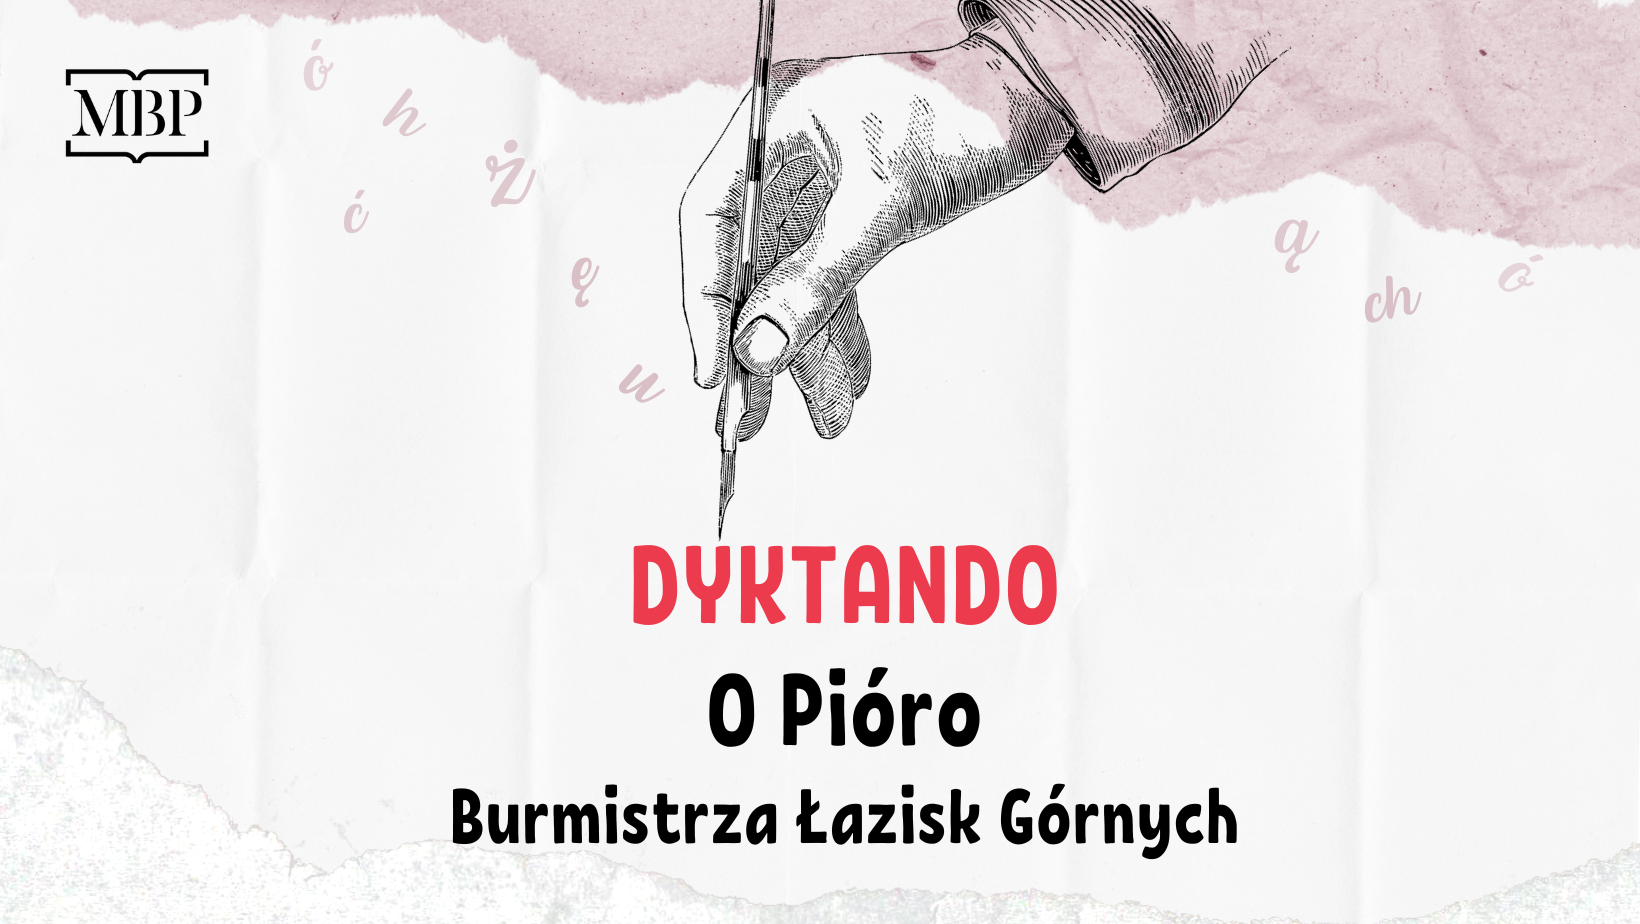 Baner Dyktando o Pióro Burmistrza Łazisk Górnych. Rysunek dłoni trzymającej pióro, rozrzucone litery